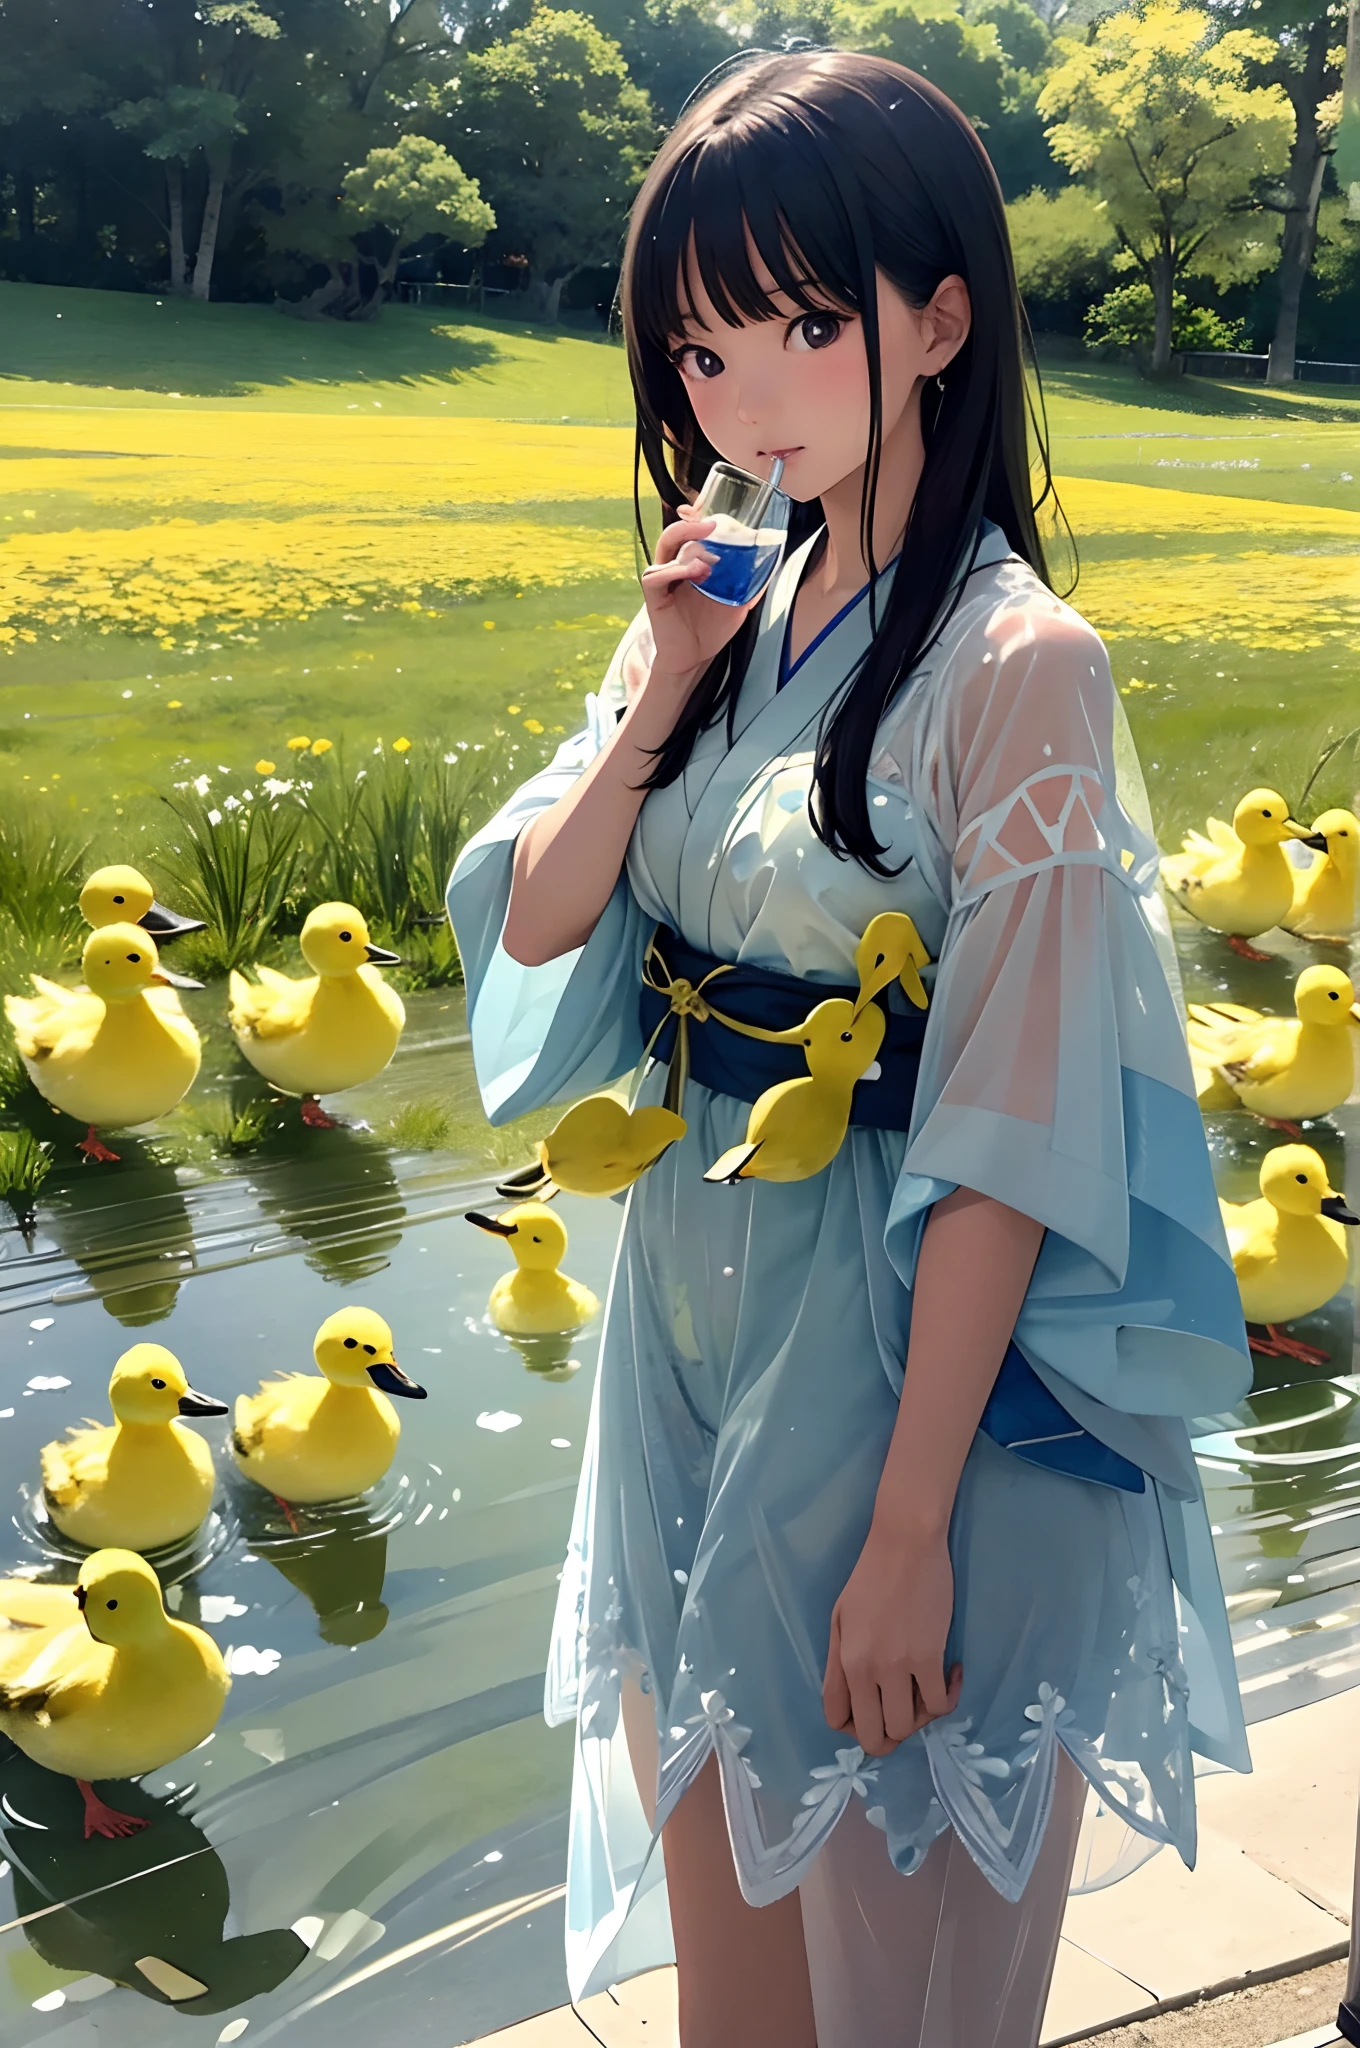 アラフィー日本人モデル, 超現実的な,2人の女の子,いやらしい:1.5, 牧草地にいる黄色いアヒルの子の横で、氷がたっぷり入ったグラスに入った水を飲む,シースルーコスチューム,刺繍模様,